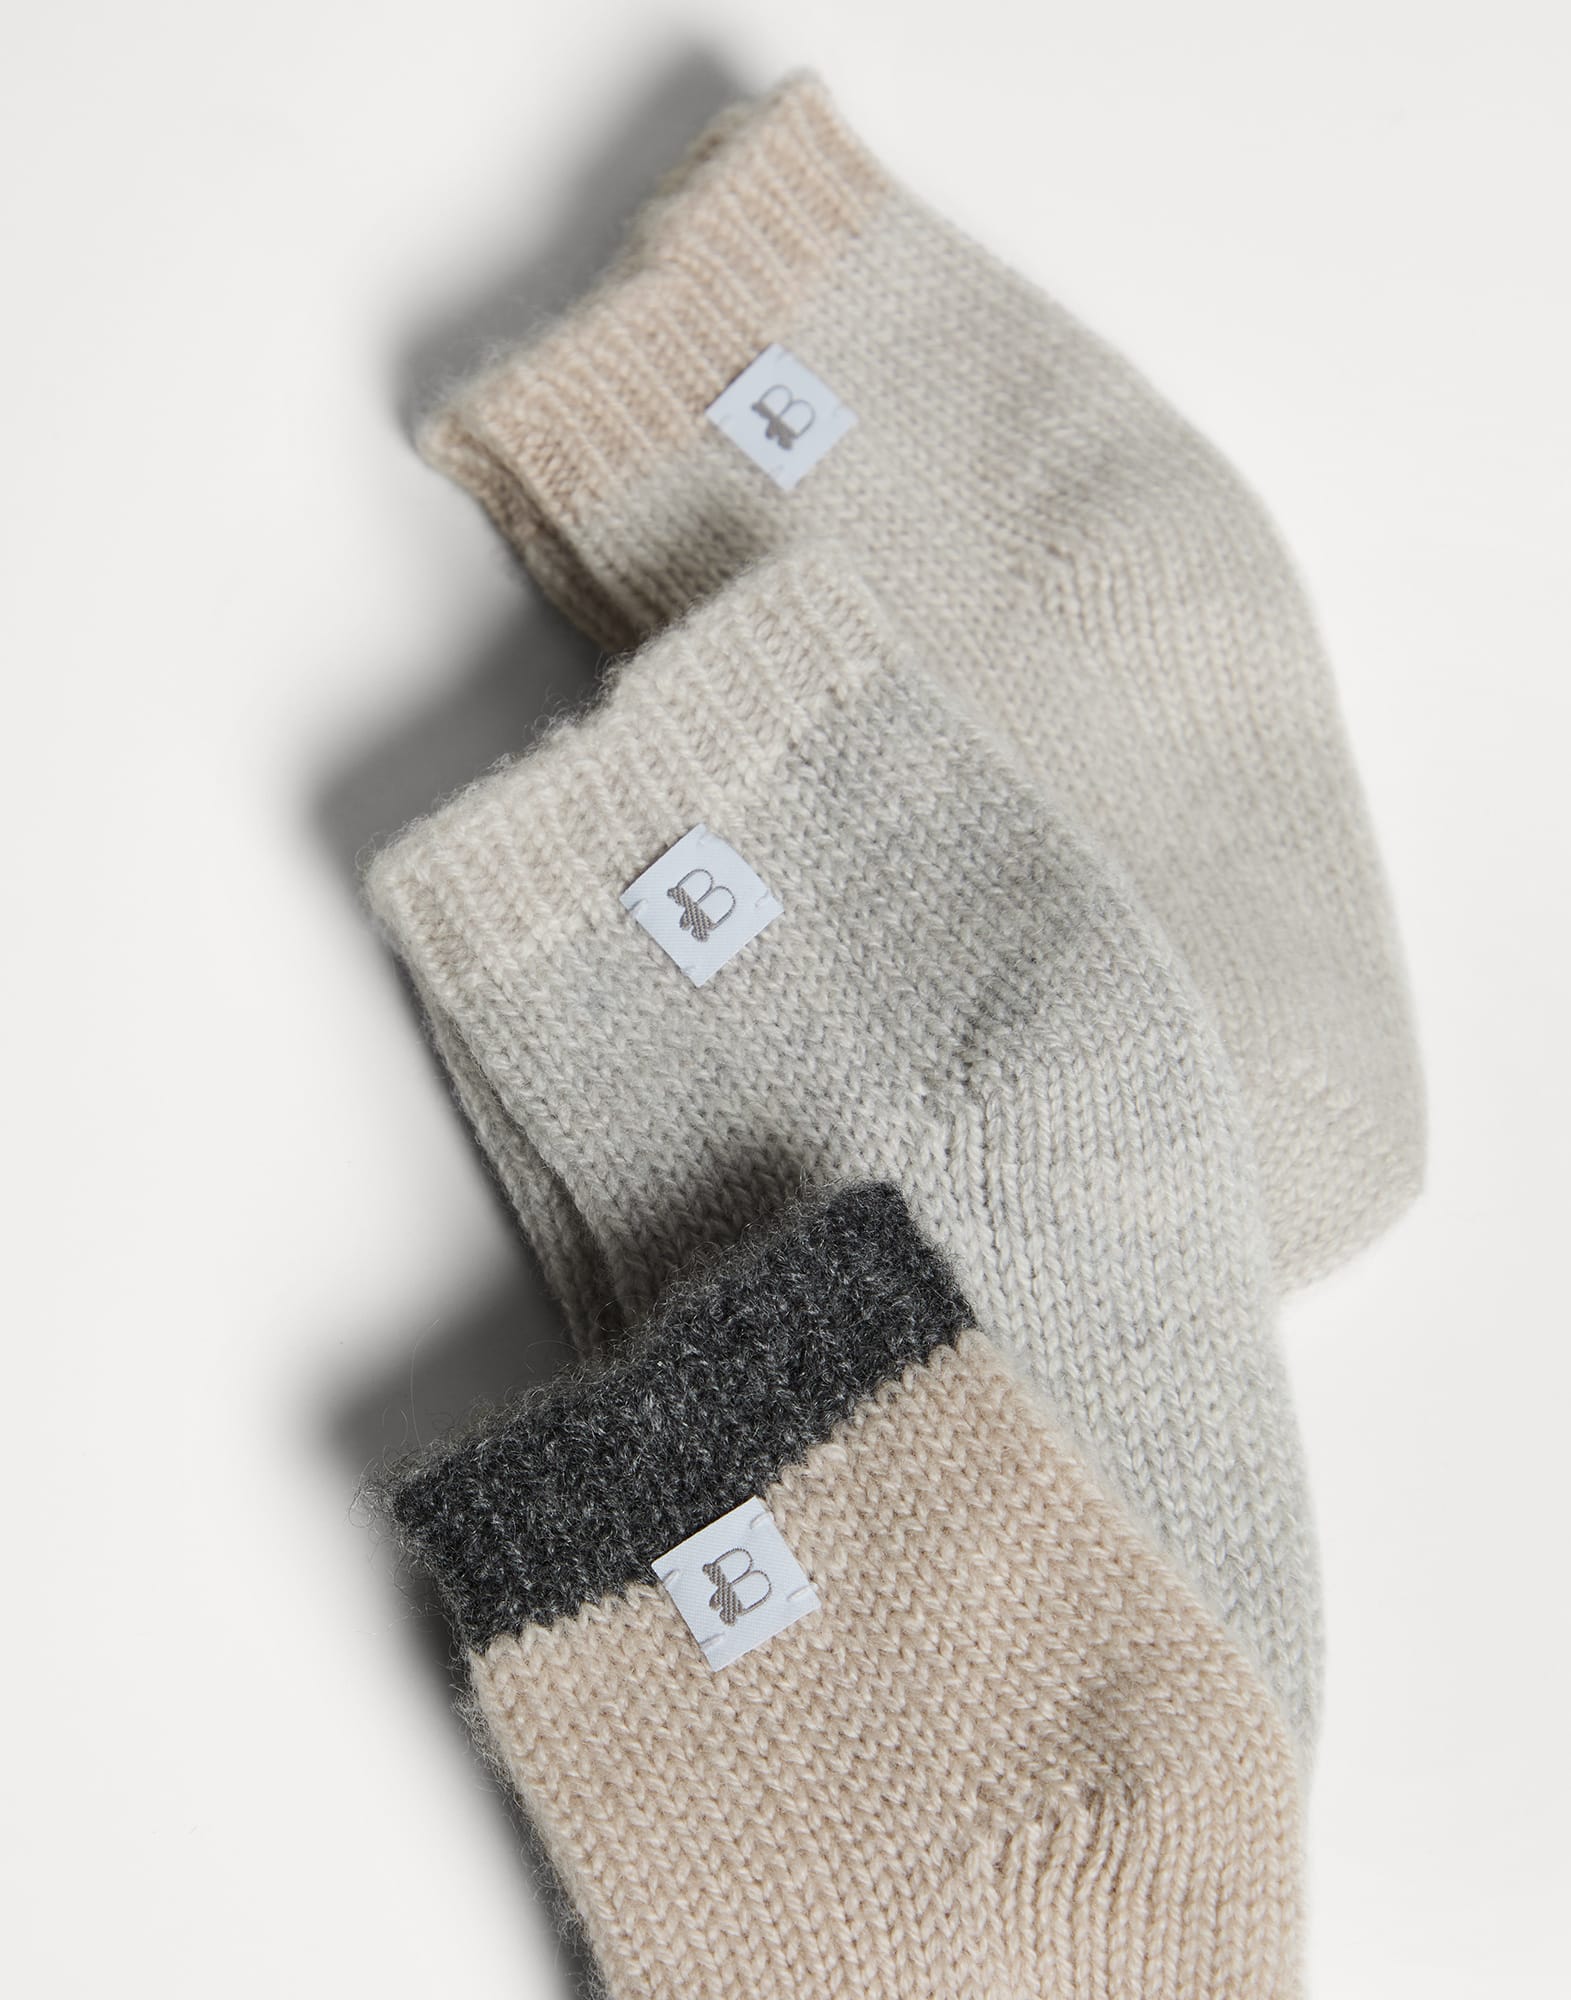 Cashmere knit socks